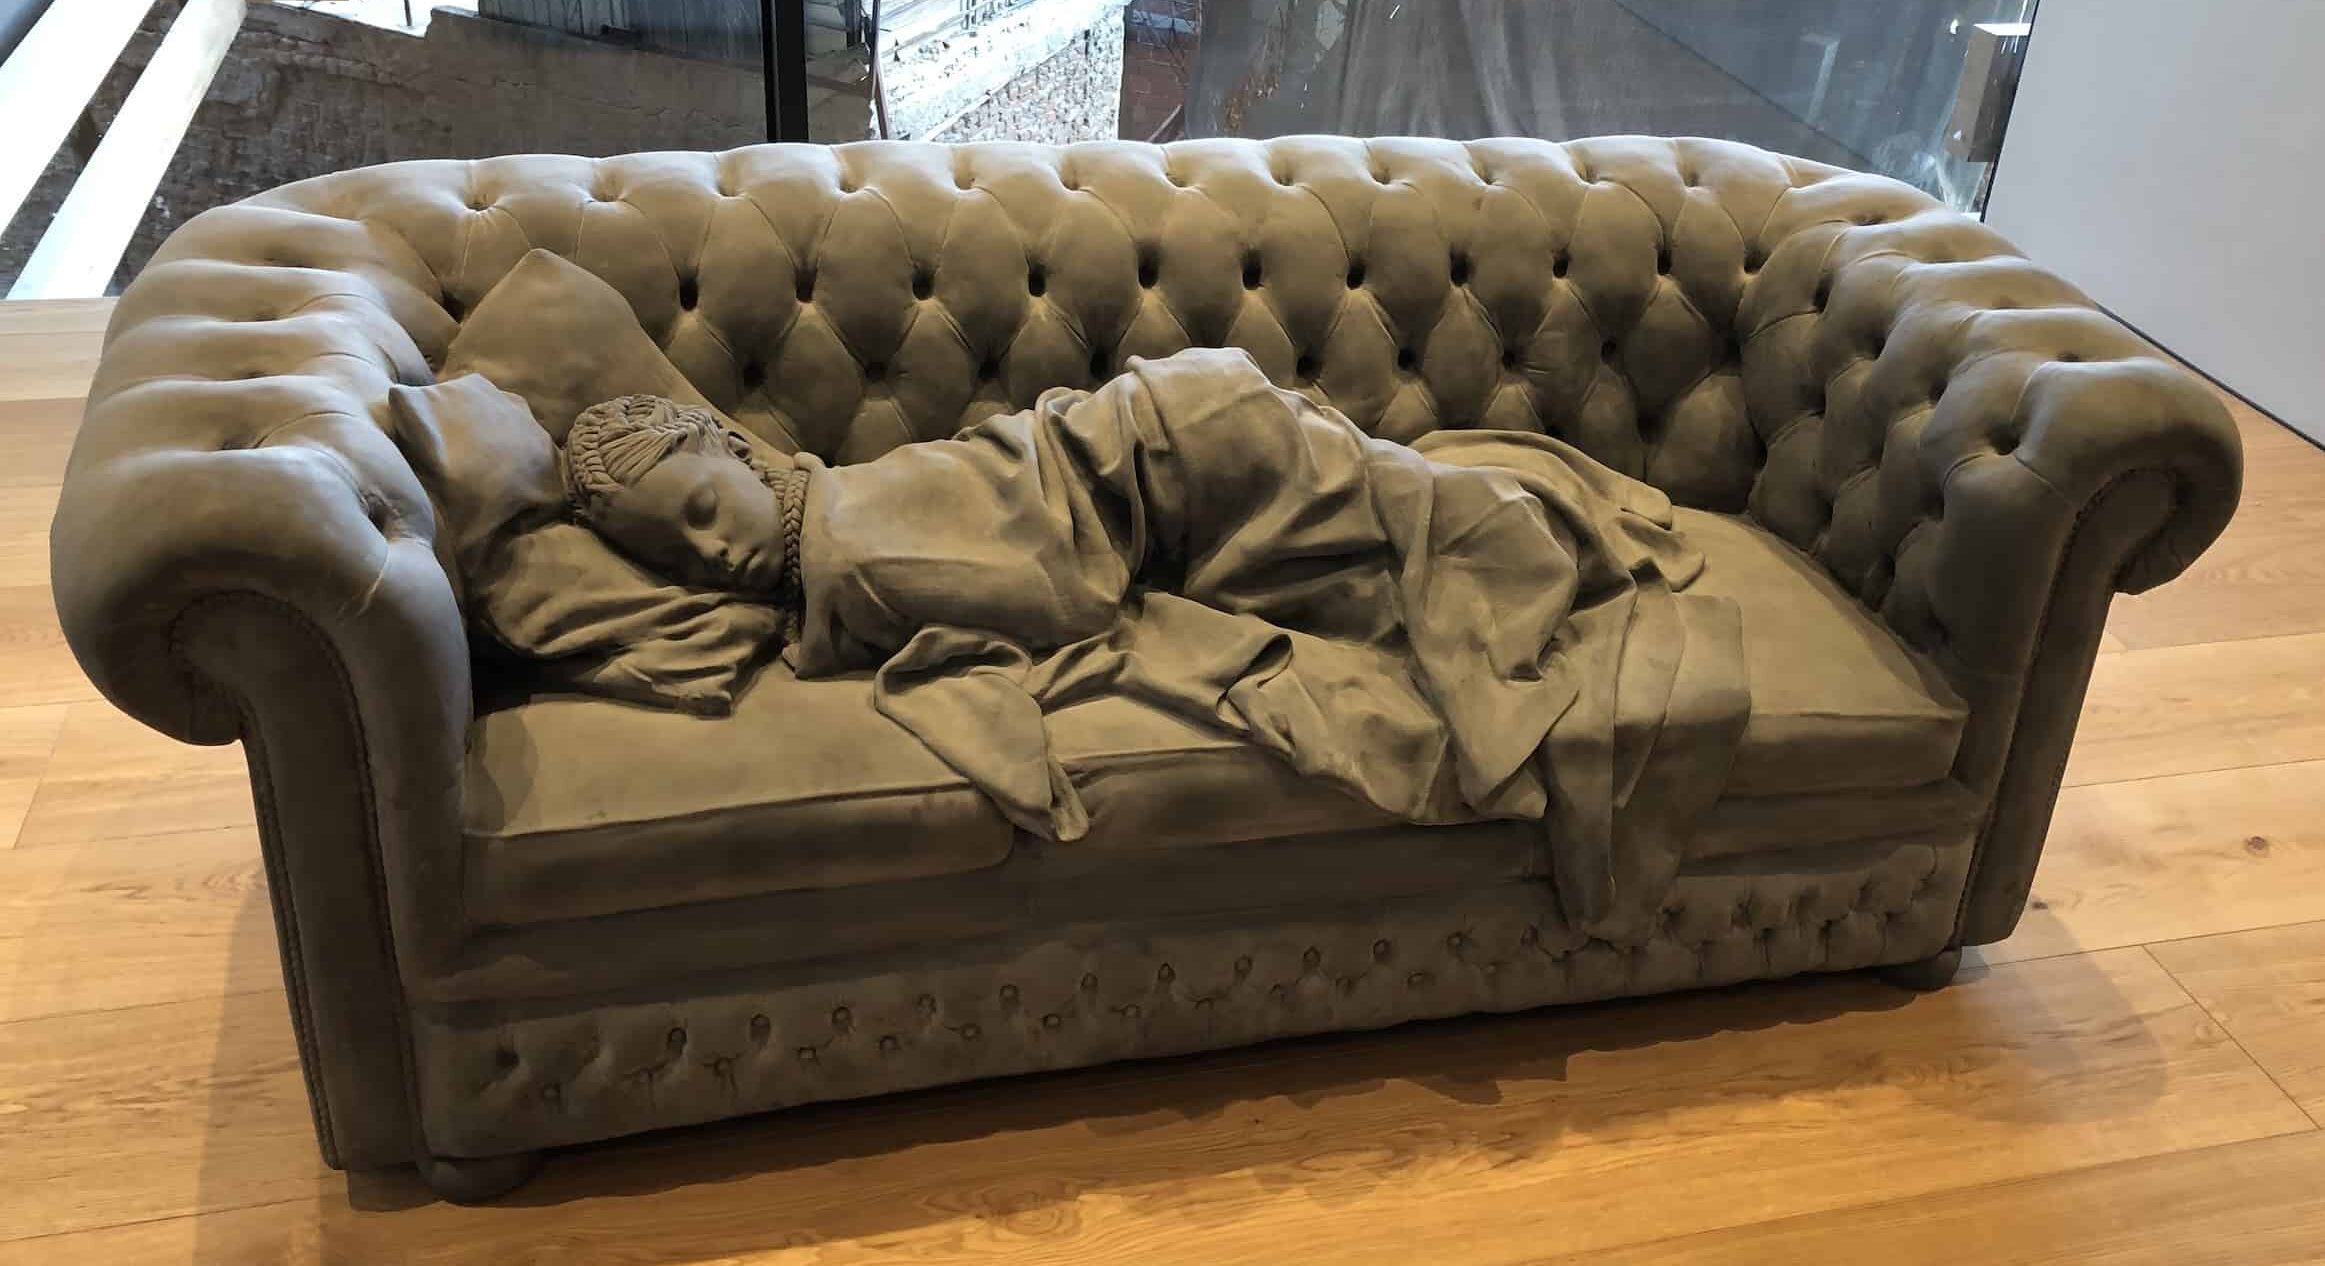 Sleeping Girl by Hans Op de Beeck, Belgium at Odunpazarı Modern Museum in Eskişehir, Turkey